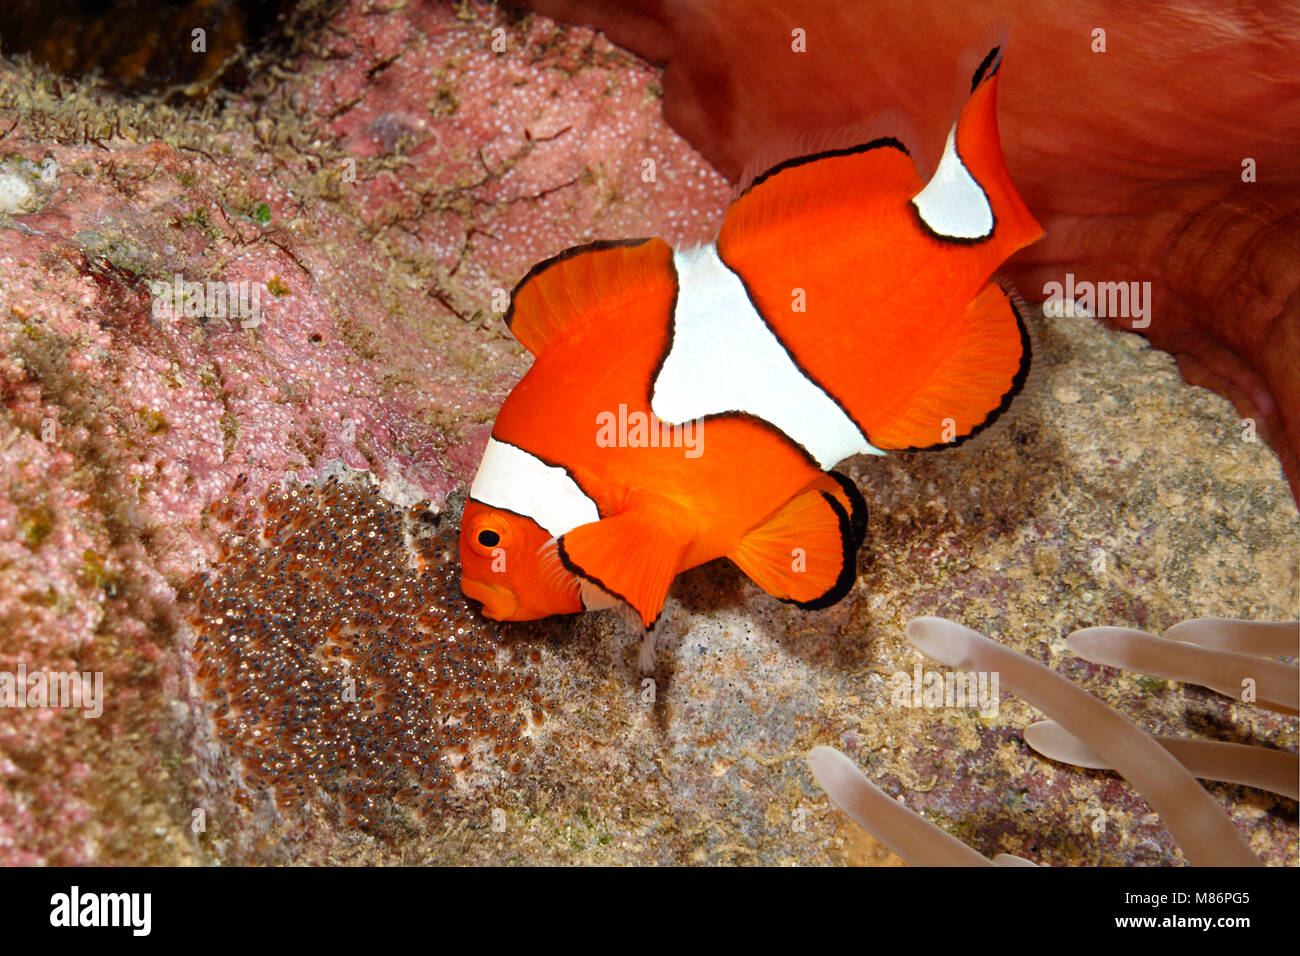 Clownfisch, Amphiprion percula, männliche Fische belüften Eier gelegt gelöscht Substrat unter dem Host herrliche Seeanemone, Heteractis magnifica Stockfoto